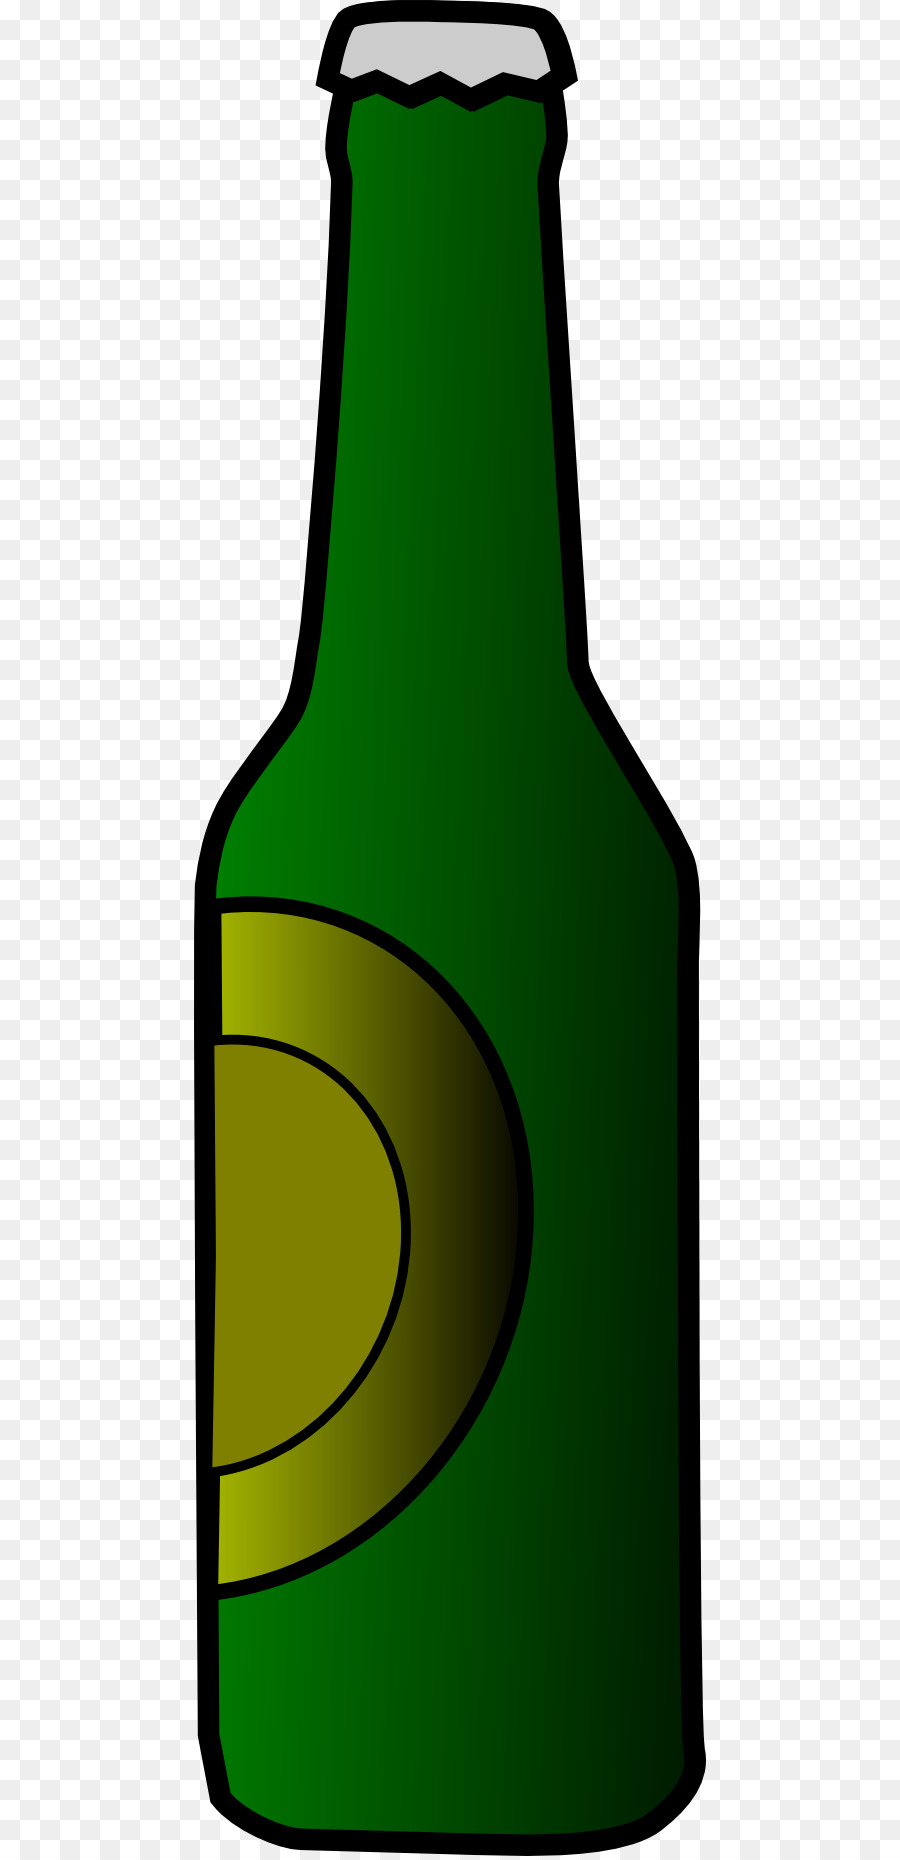 Bier-Flaschen-Wasser-Flaschen-clipart - Schnaps Flasche cliparts